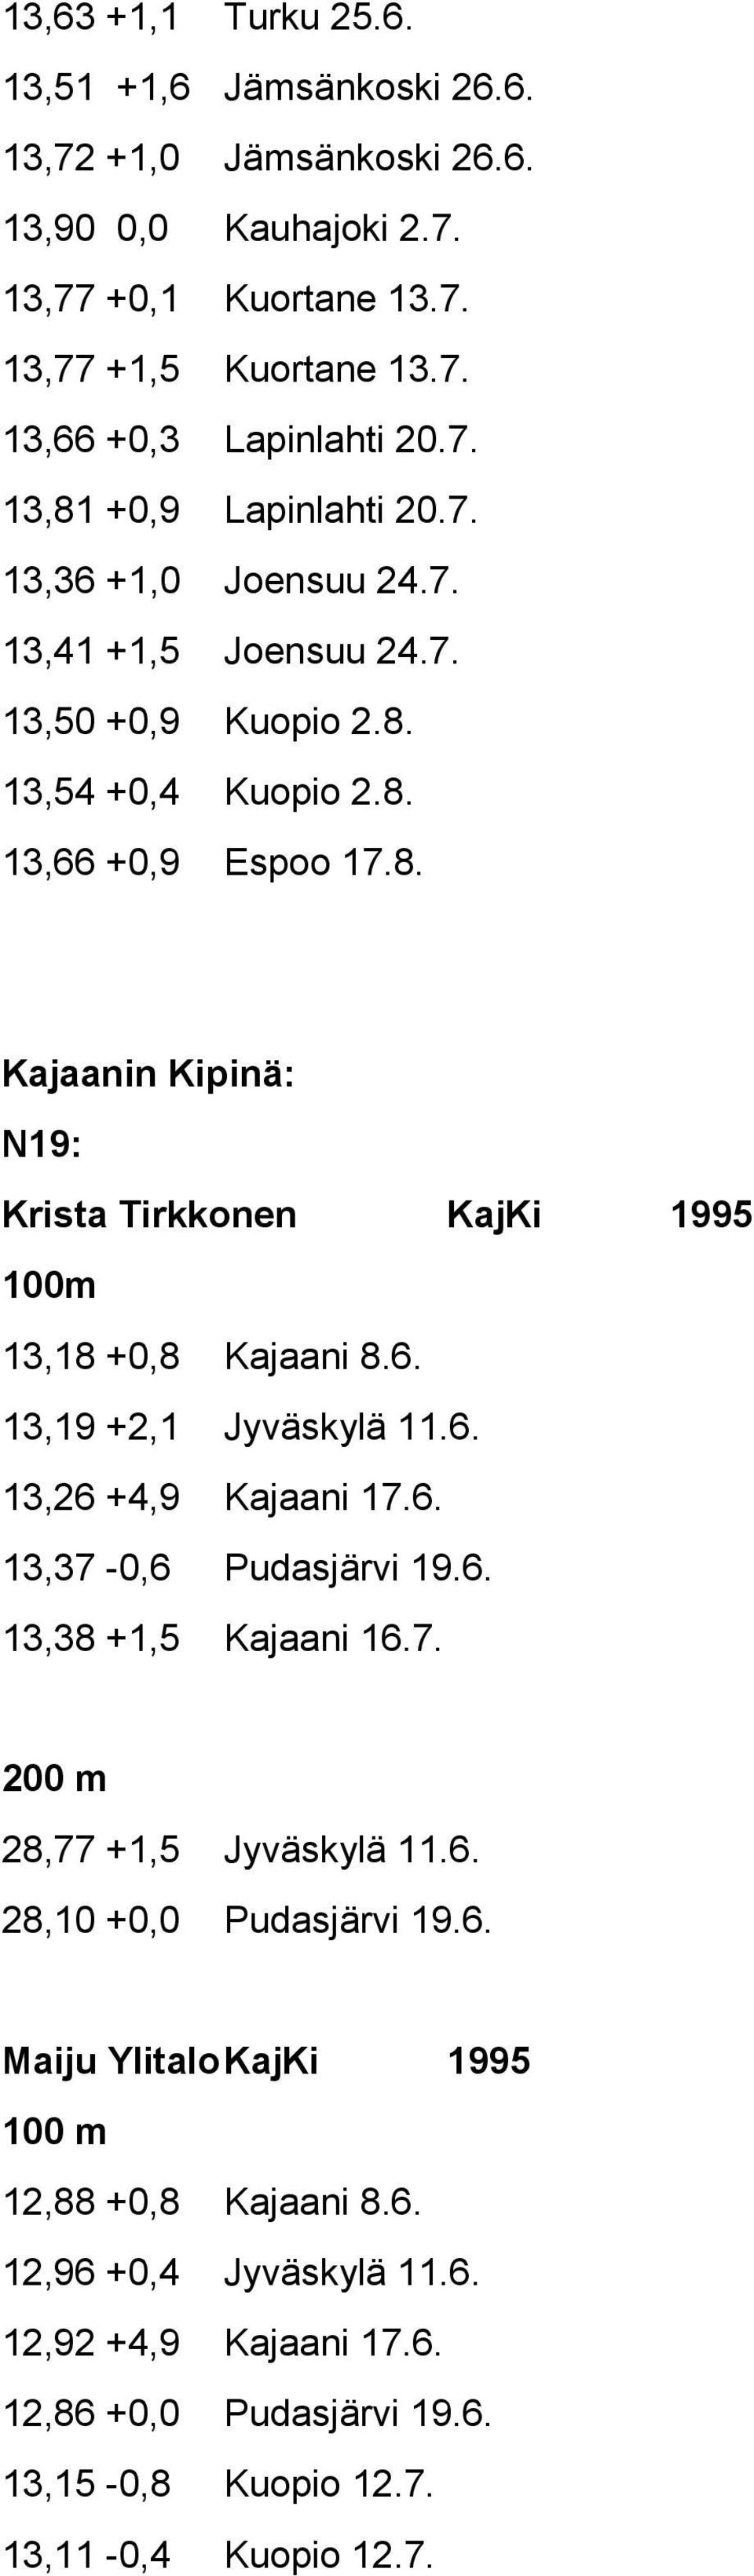 6. 13,19 +2,1 Jyväskylä 11.6. 13,26 +4,9 Kajaani 17.6. 13,37-0,6 Pudasjärvi 19.6. 13,38 +1,5 Kajaani 16.7. 28,77 +1,5 Jyväskylä 11.6. 28,10 +0,0 Pudasjärvi 19.6. Maiju Ylitalo KajKi 1995 12,88 +0,8 Kajaani 8.